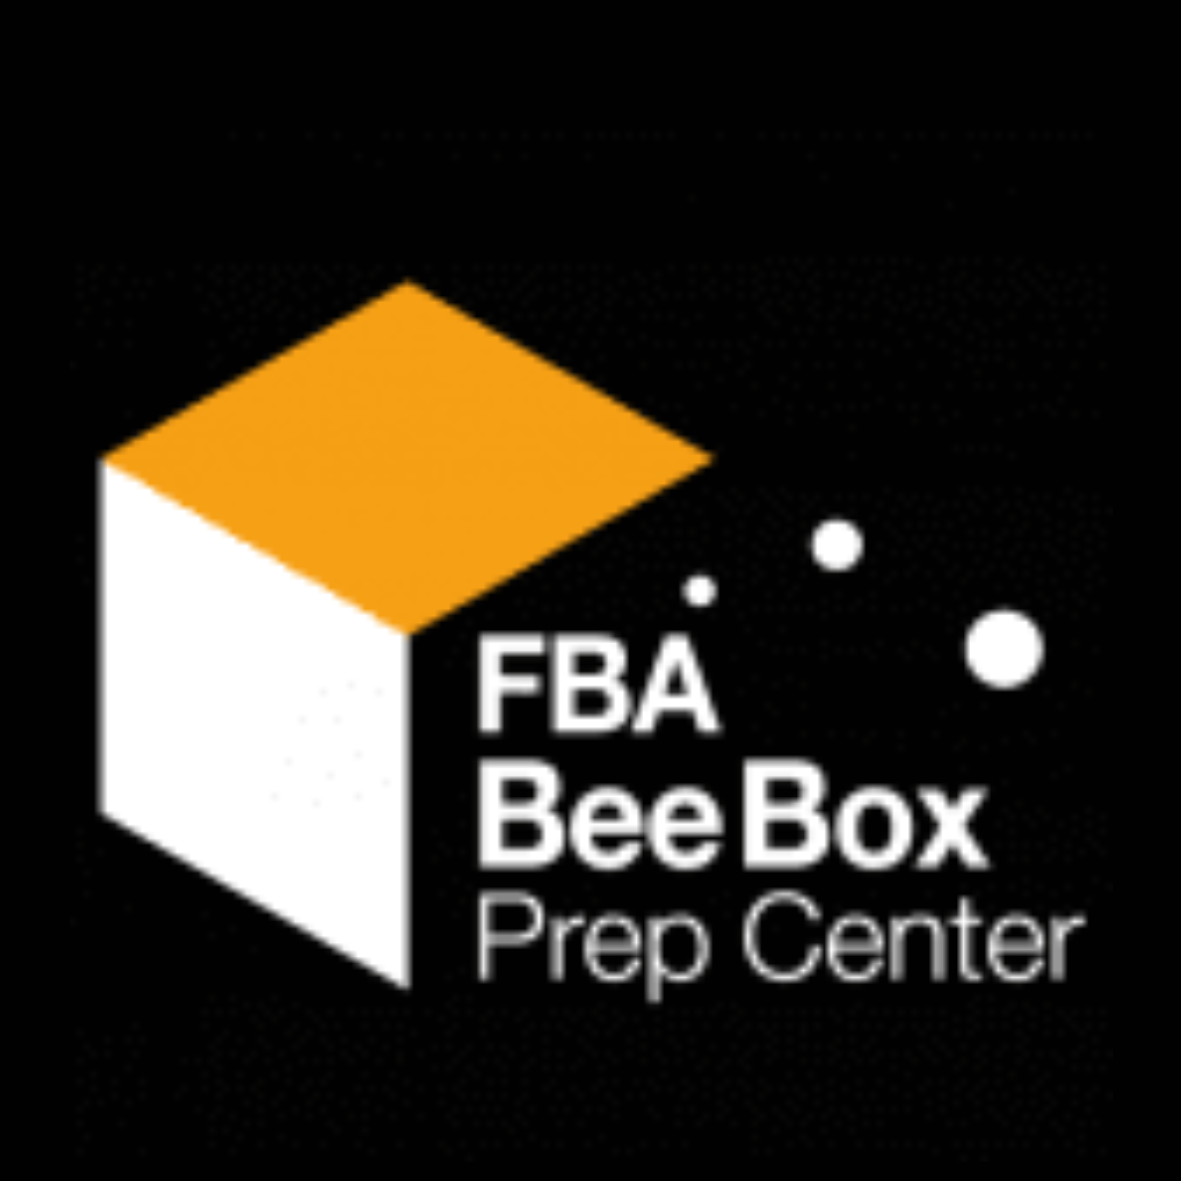 FBA Bee Box, Prep Center